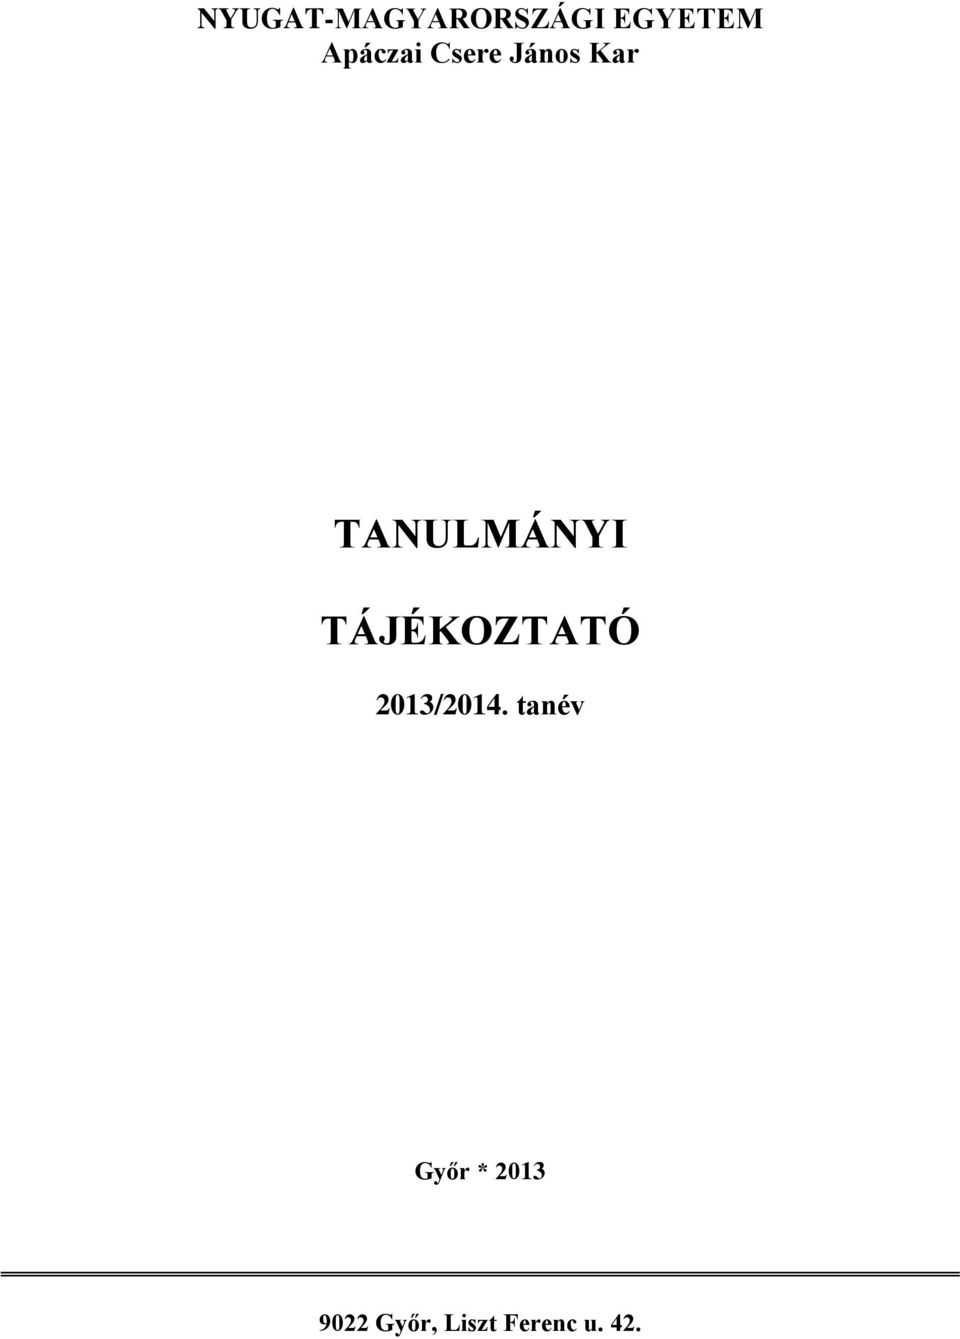 TANULMÁNYI TÁJÉKOZTATÓ 2013/2014.